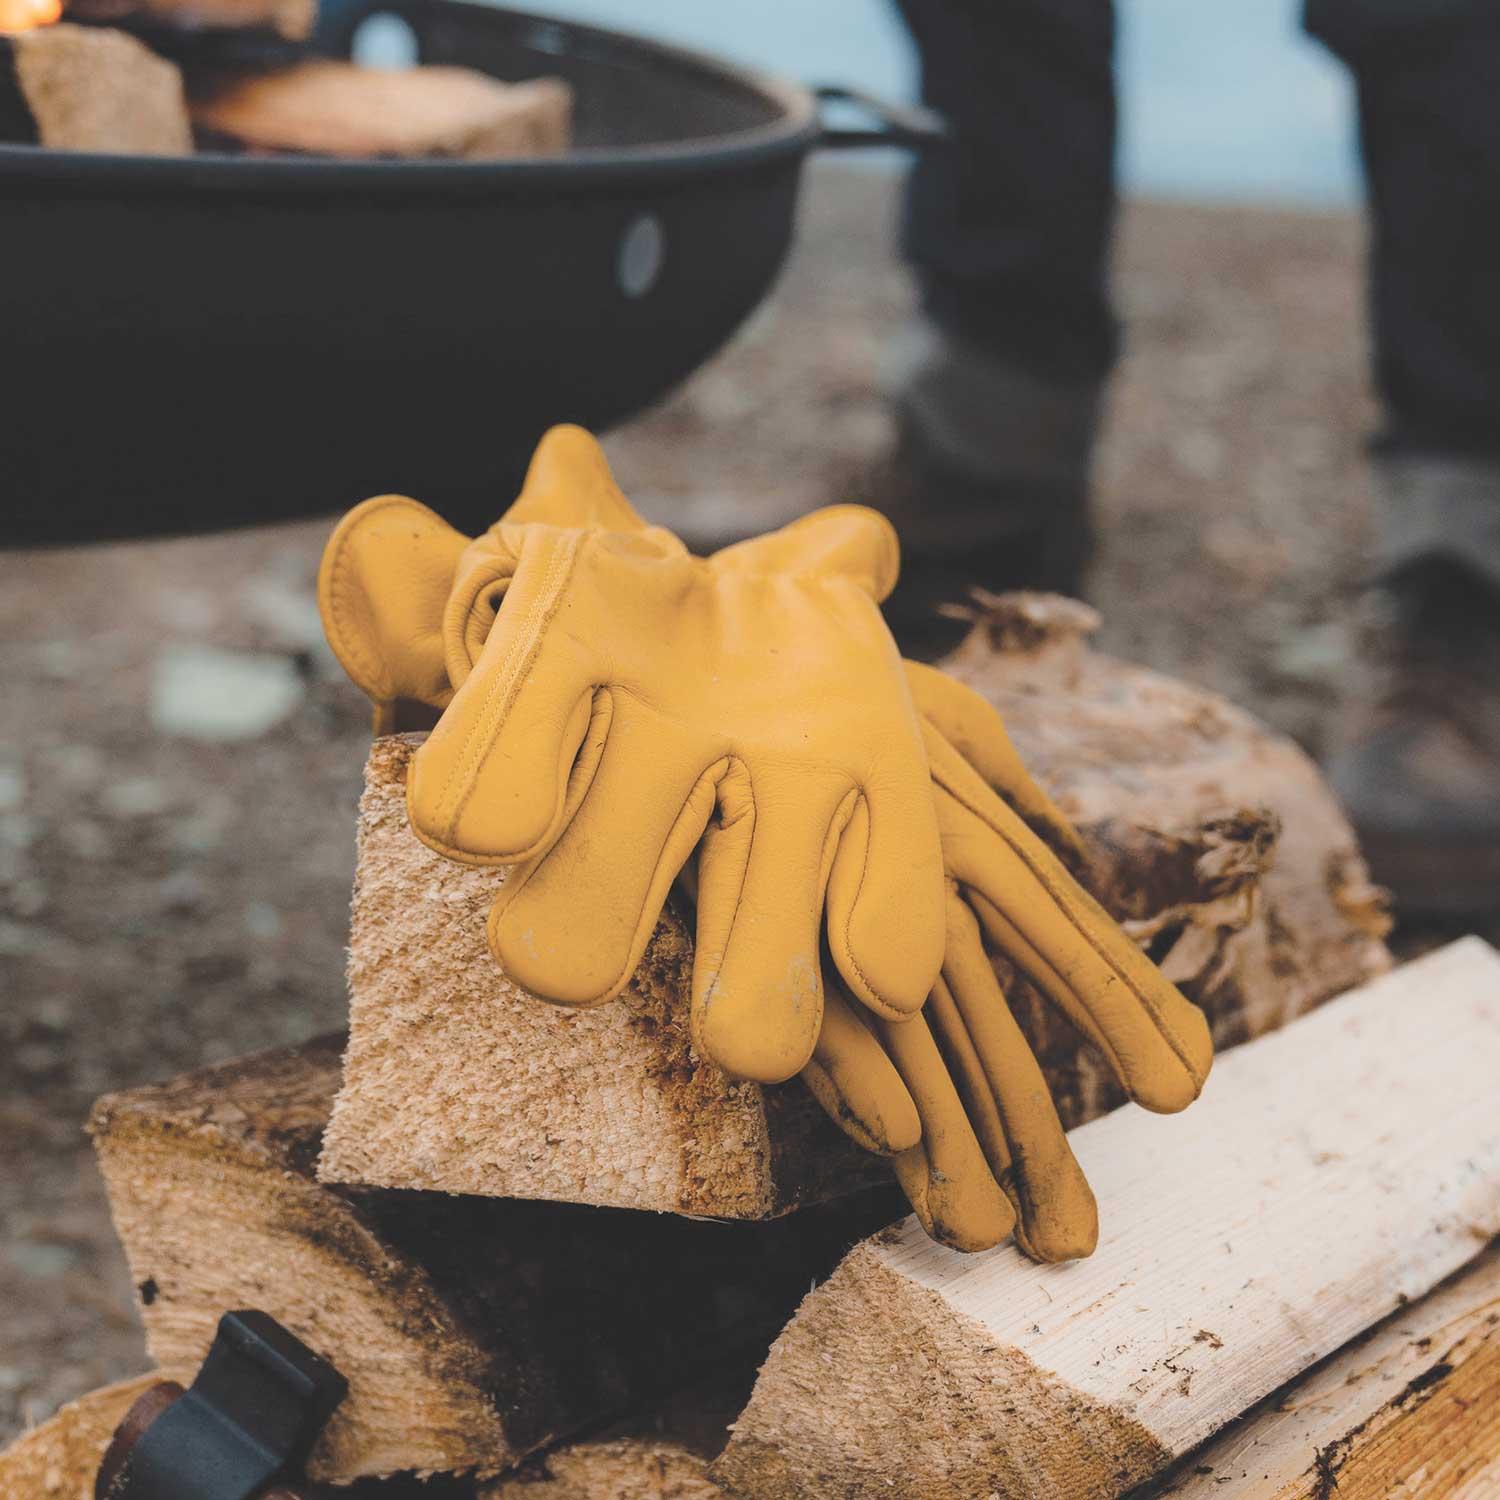 Carving Glove Children. Cut Resistant Gloves Children's Work